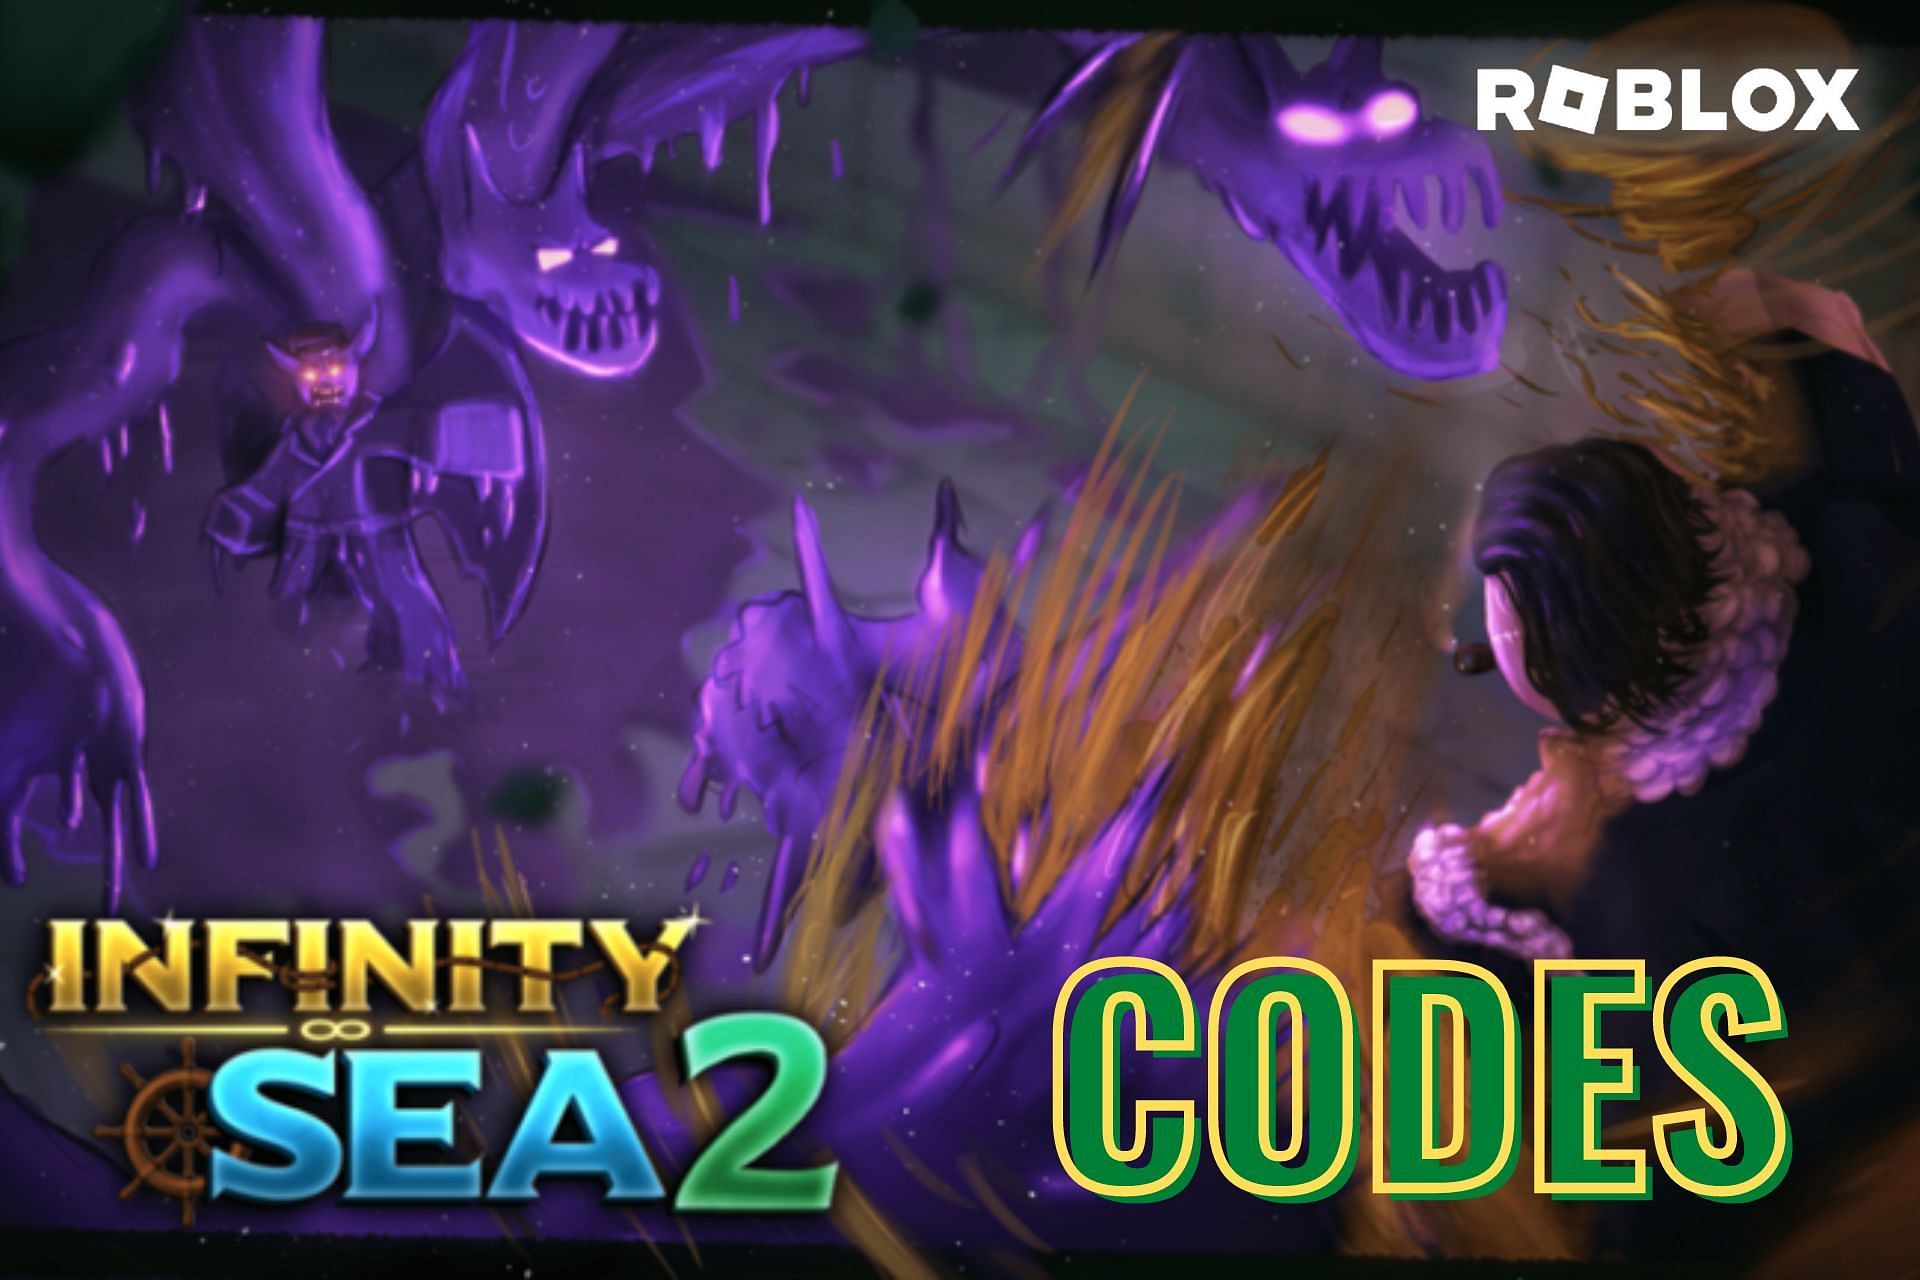 Sea Piece 2 Codes - Roblox